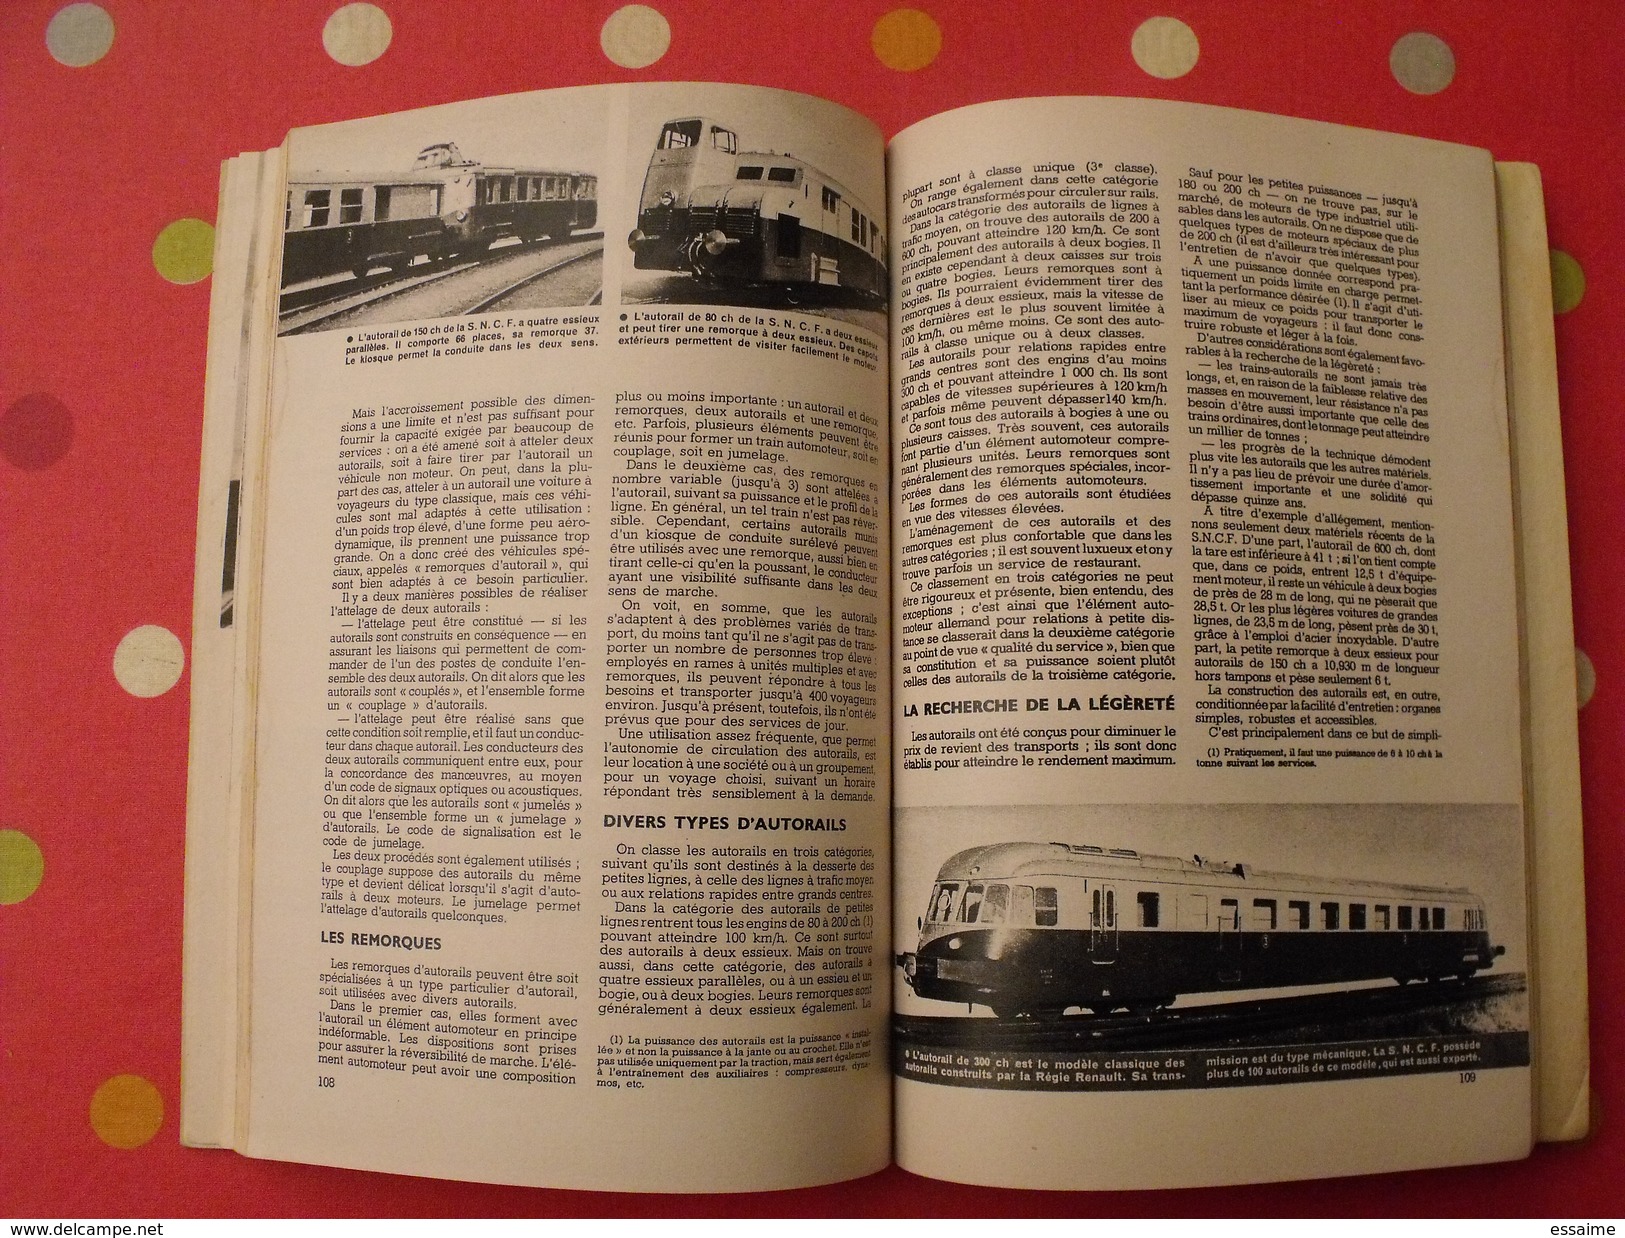 Science et Vie. n° spécial chemins de fer 1952. illustrations train locomotive micheline autorail